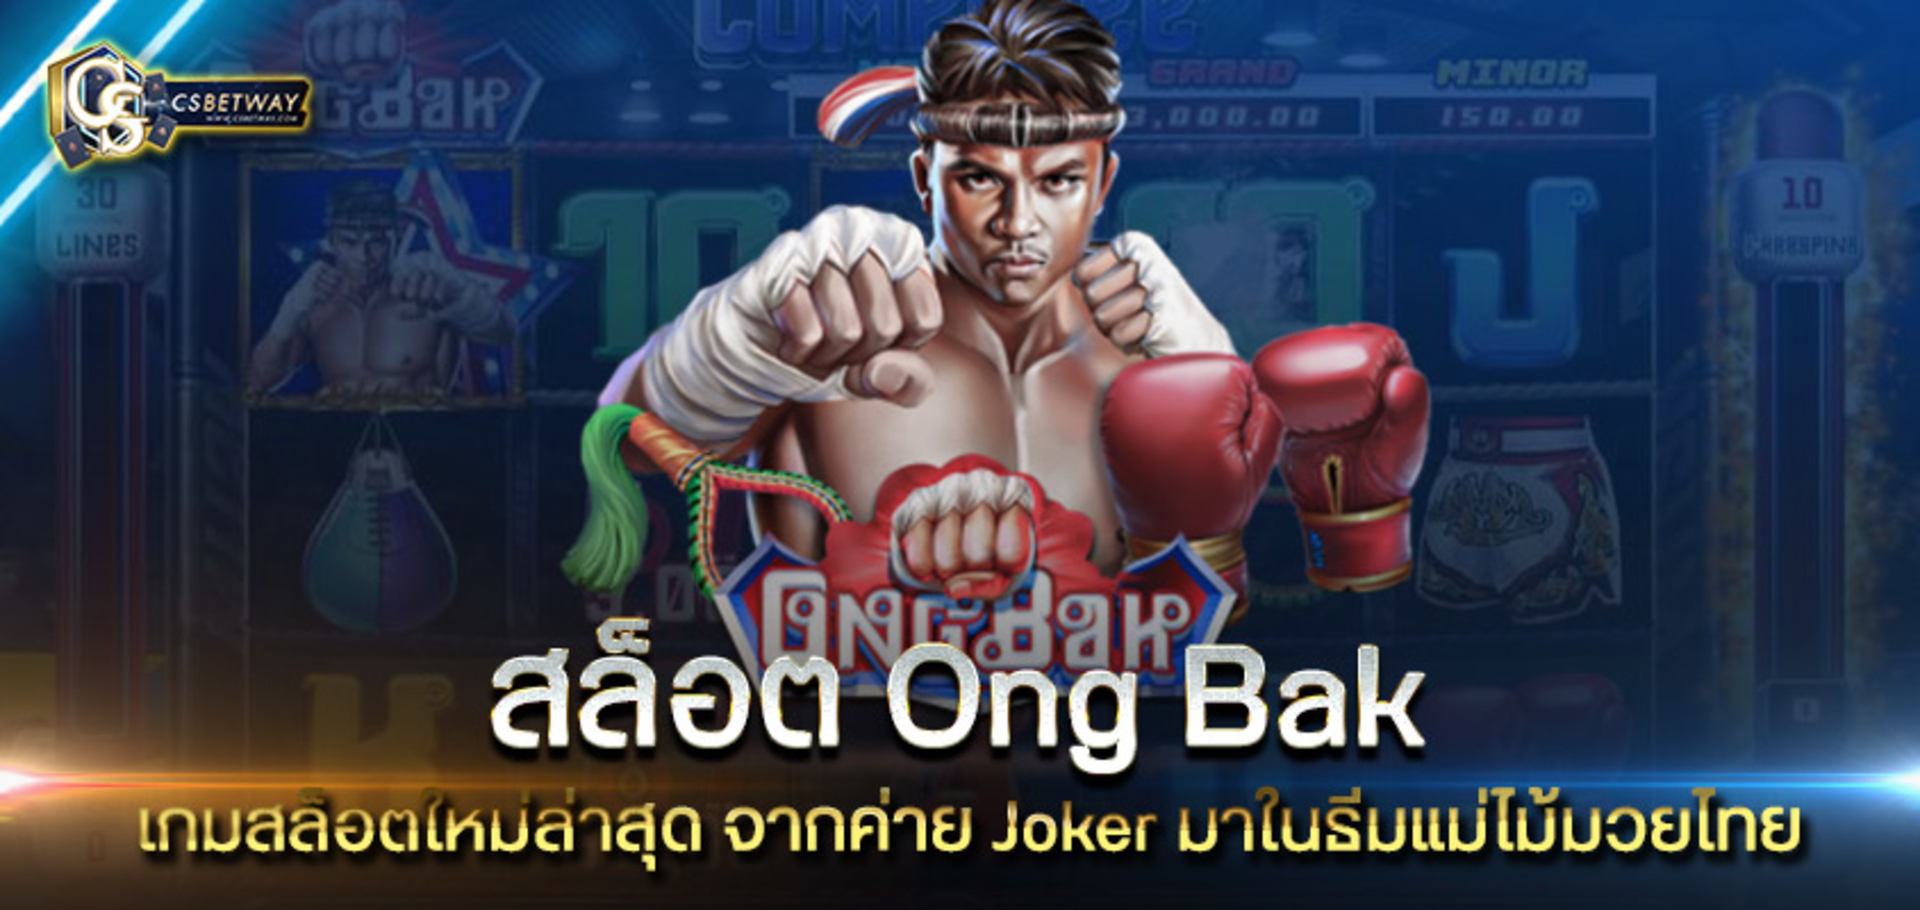 สล็อต Ong Bak เกมสล็อตใหม่ล่าสุด จากค่าย Joker มาในธีมแม่ไม้มวยไทย เล่นง่าย ได้เงินจริง เกมสล็อต สล็อตออนไลน์